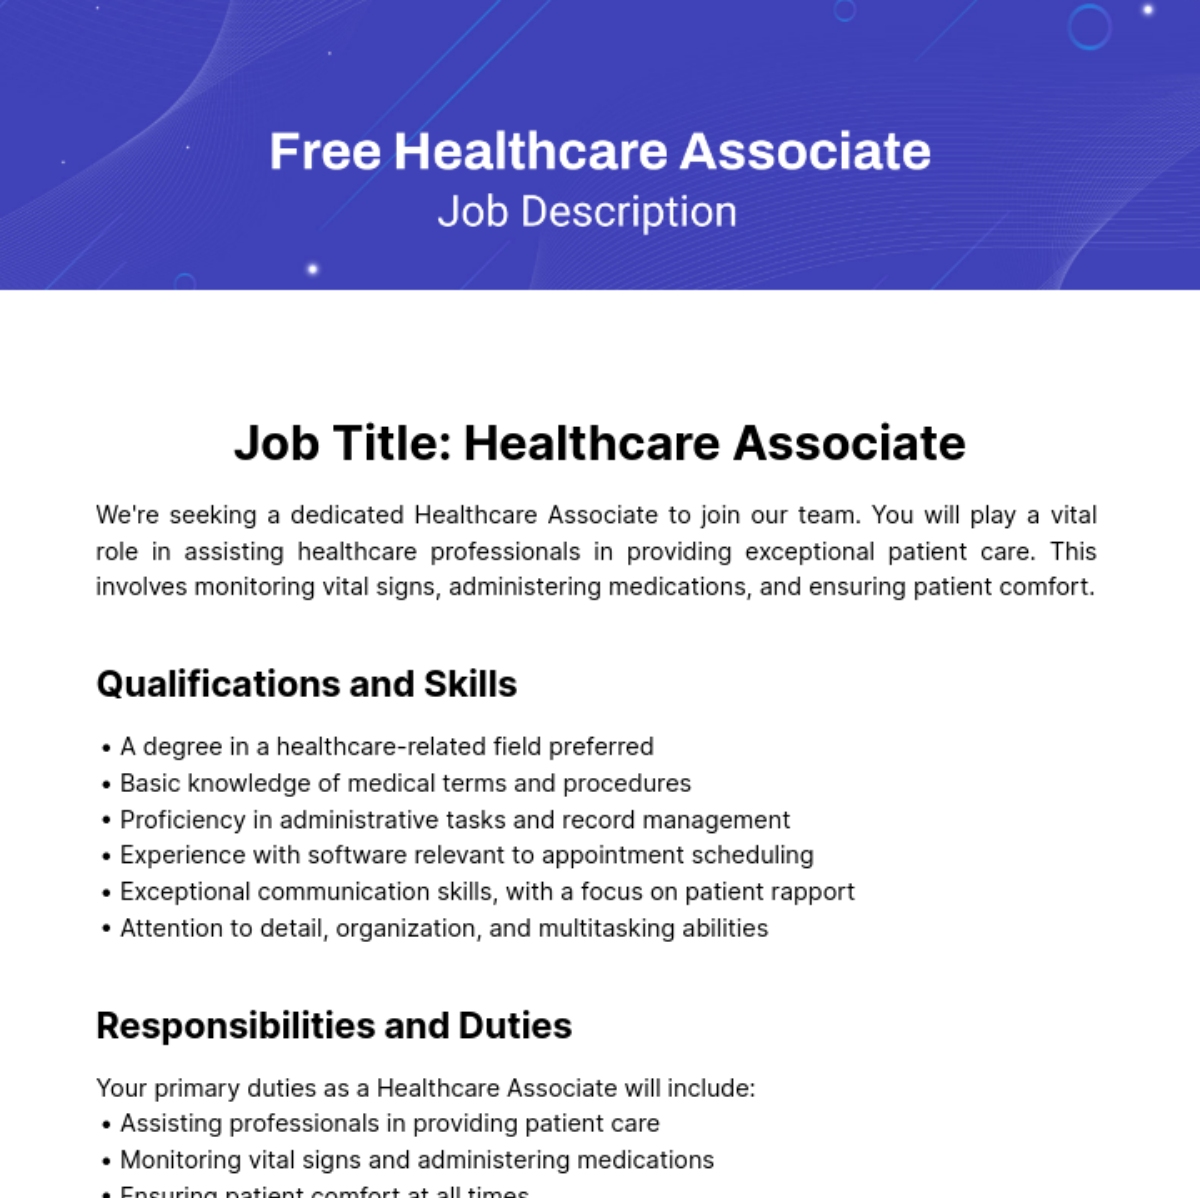 Free Healthcare Associate Job Description Template